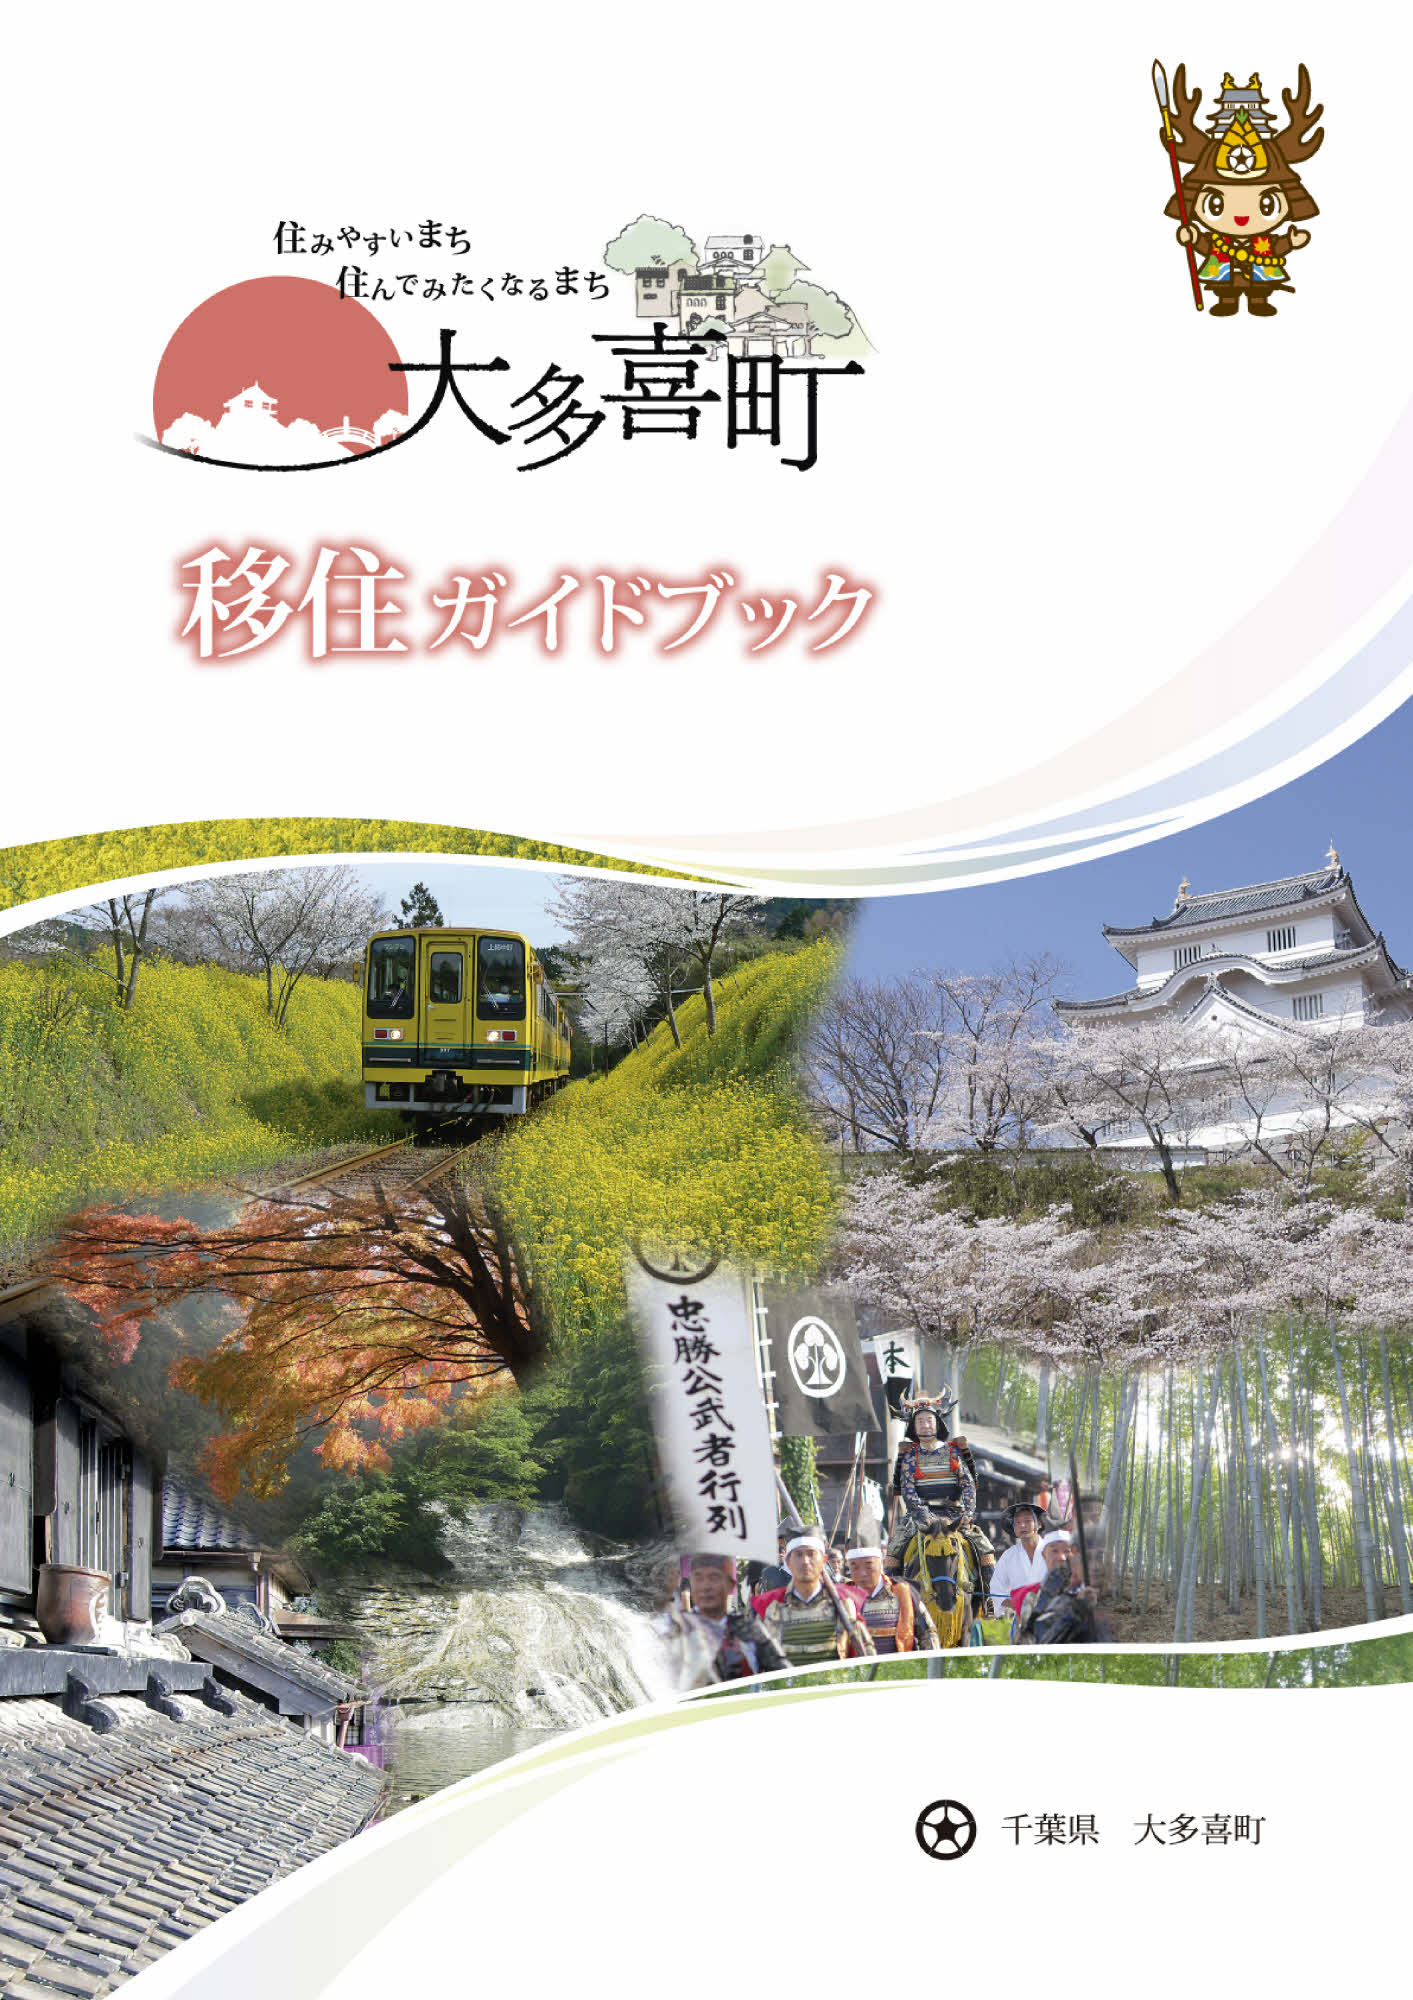 電車や城の写真が飾る、大多喜町移住ガイドブックの表紙